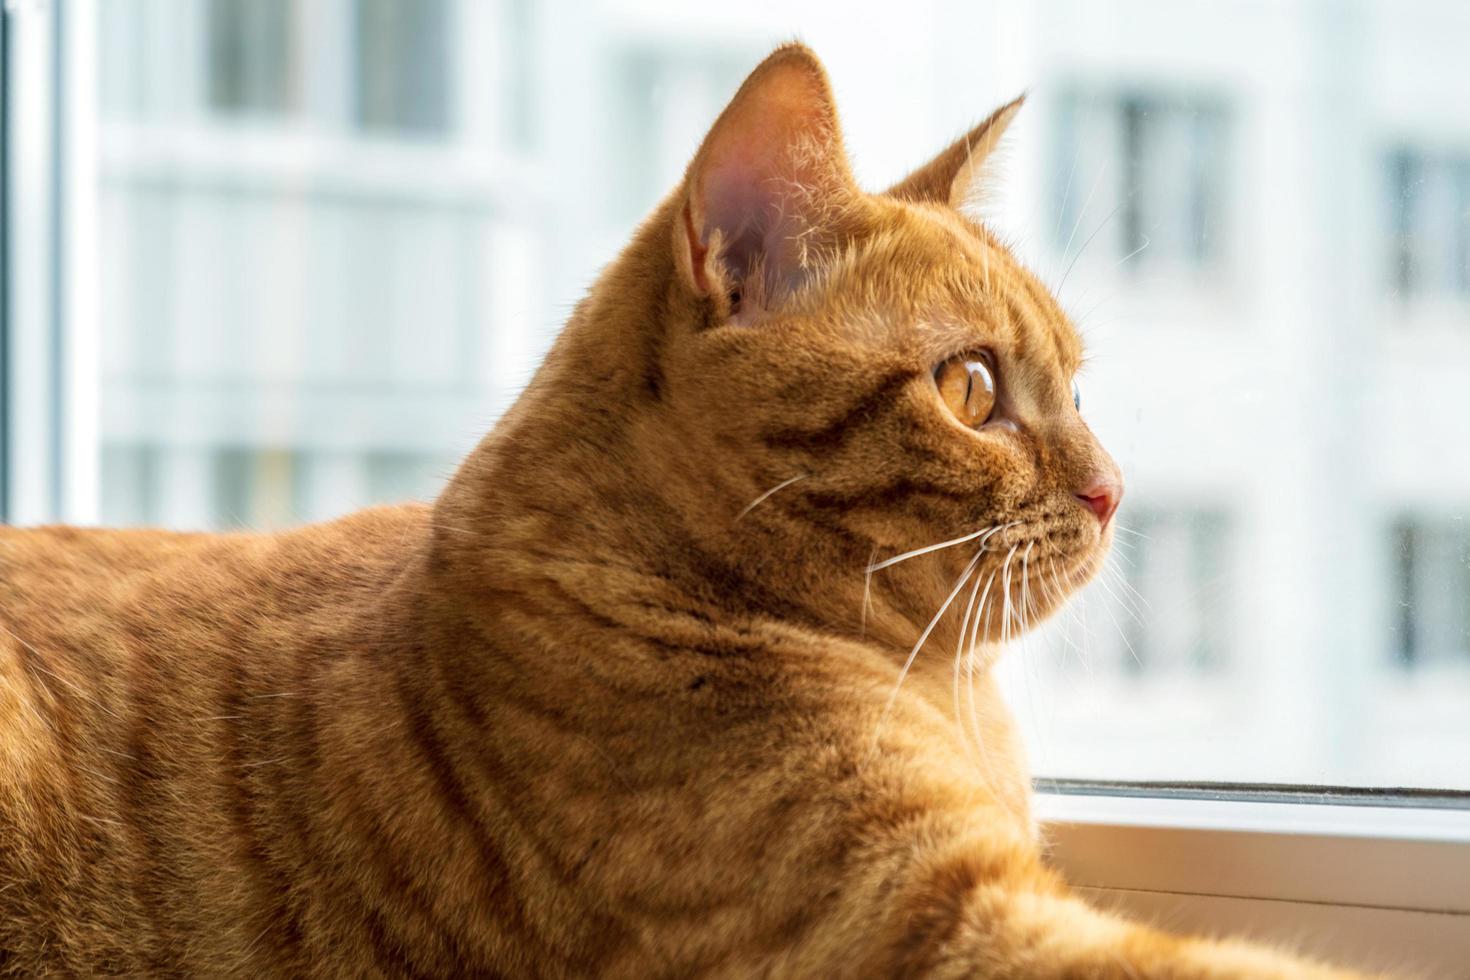 gato gordo jovem vermelho encontra-se no parapeito da janela e olha pela janela foto